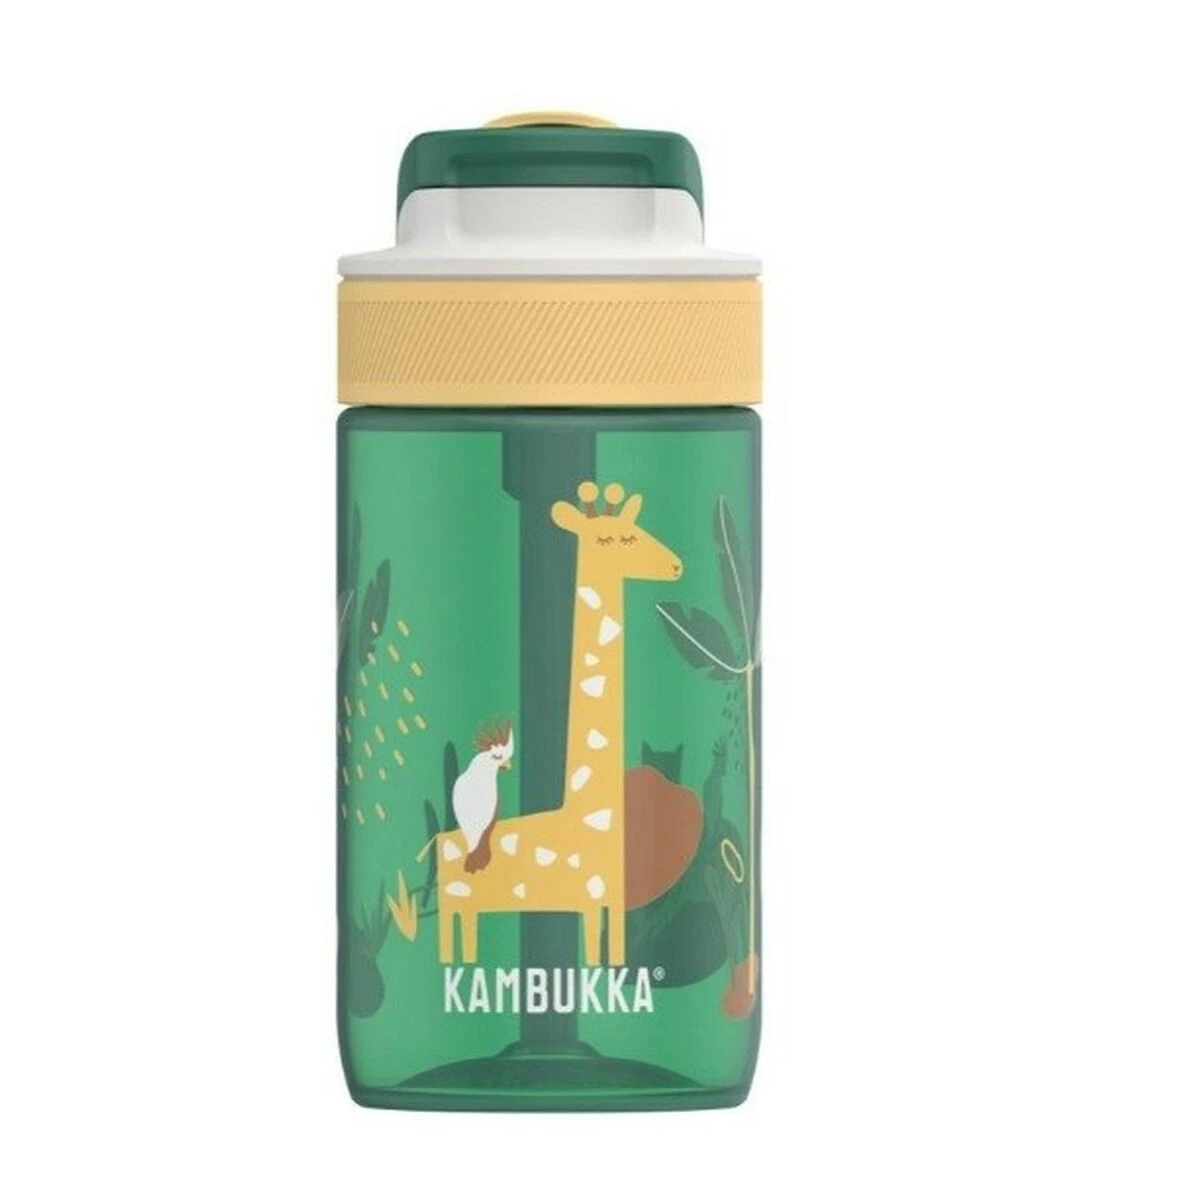 Green bottle with giraffe and bird